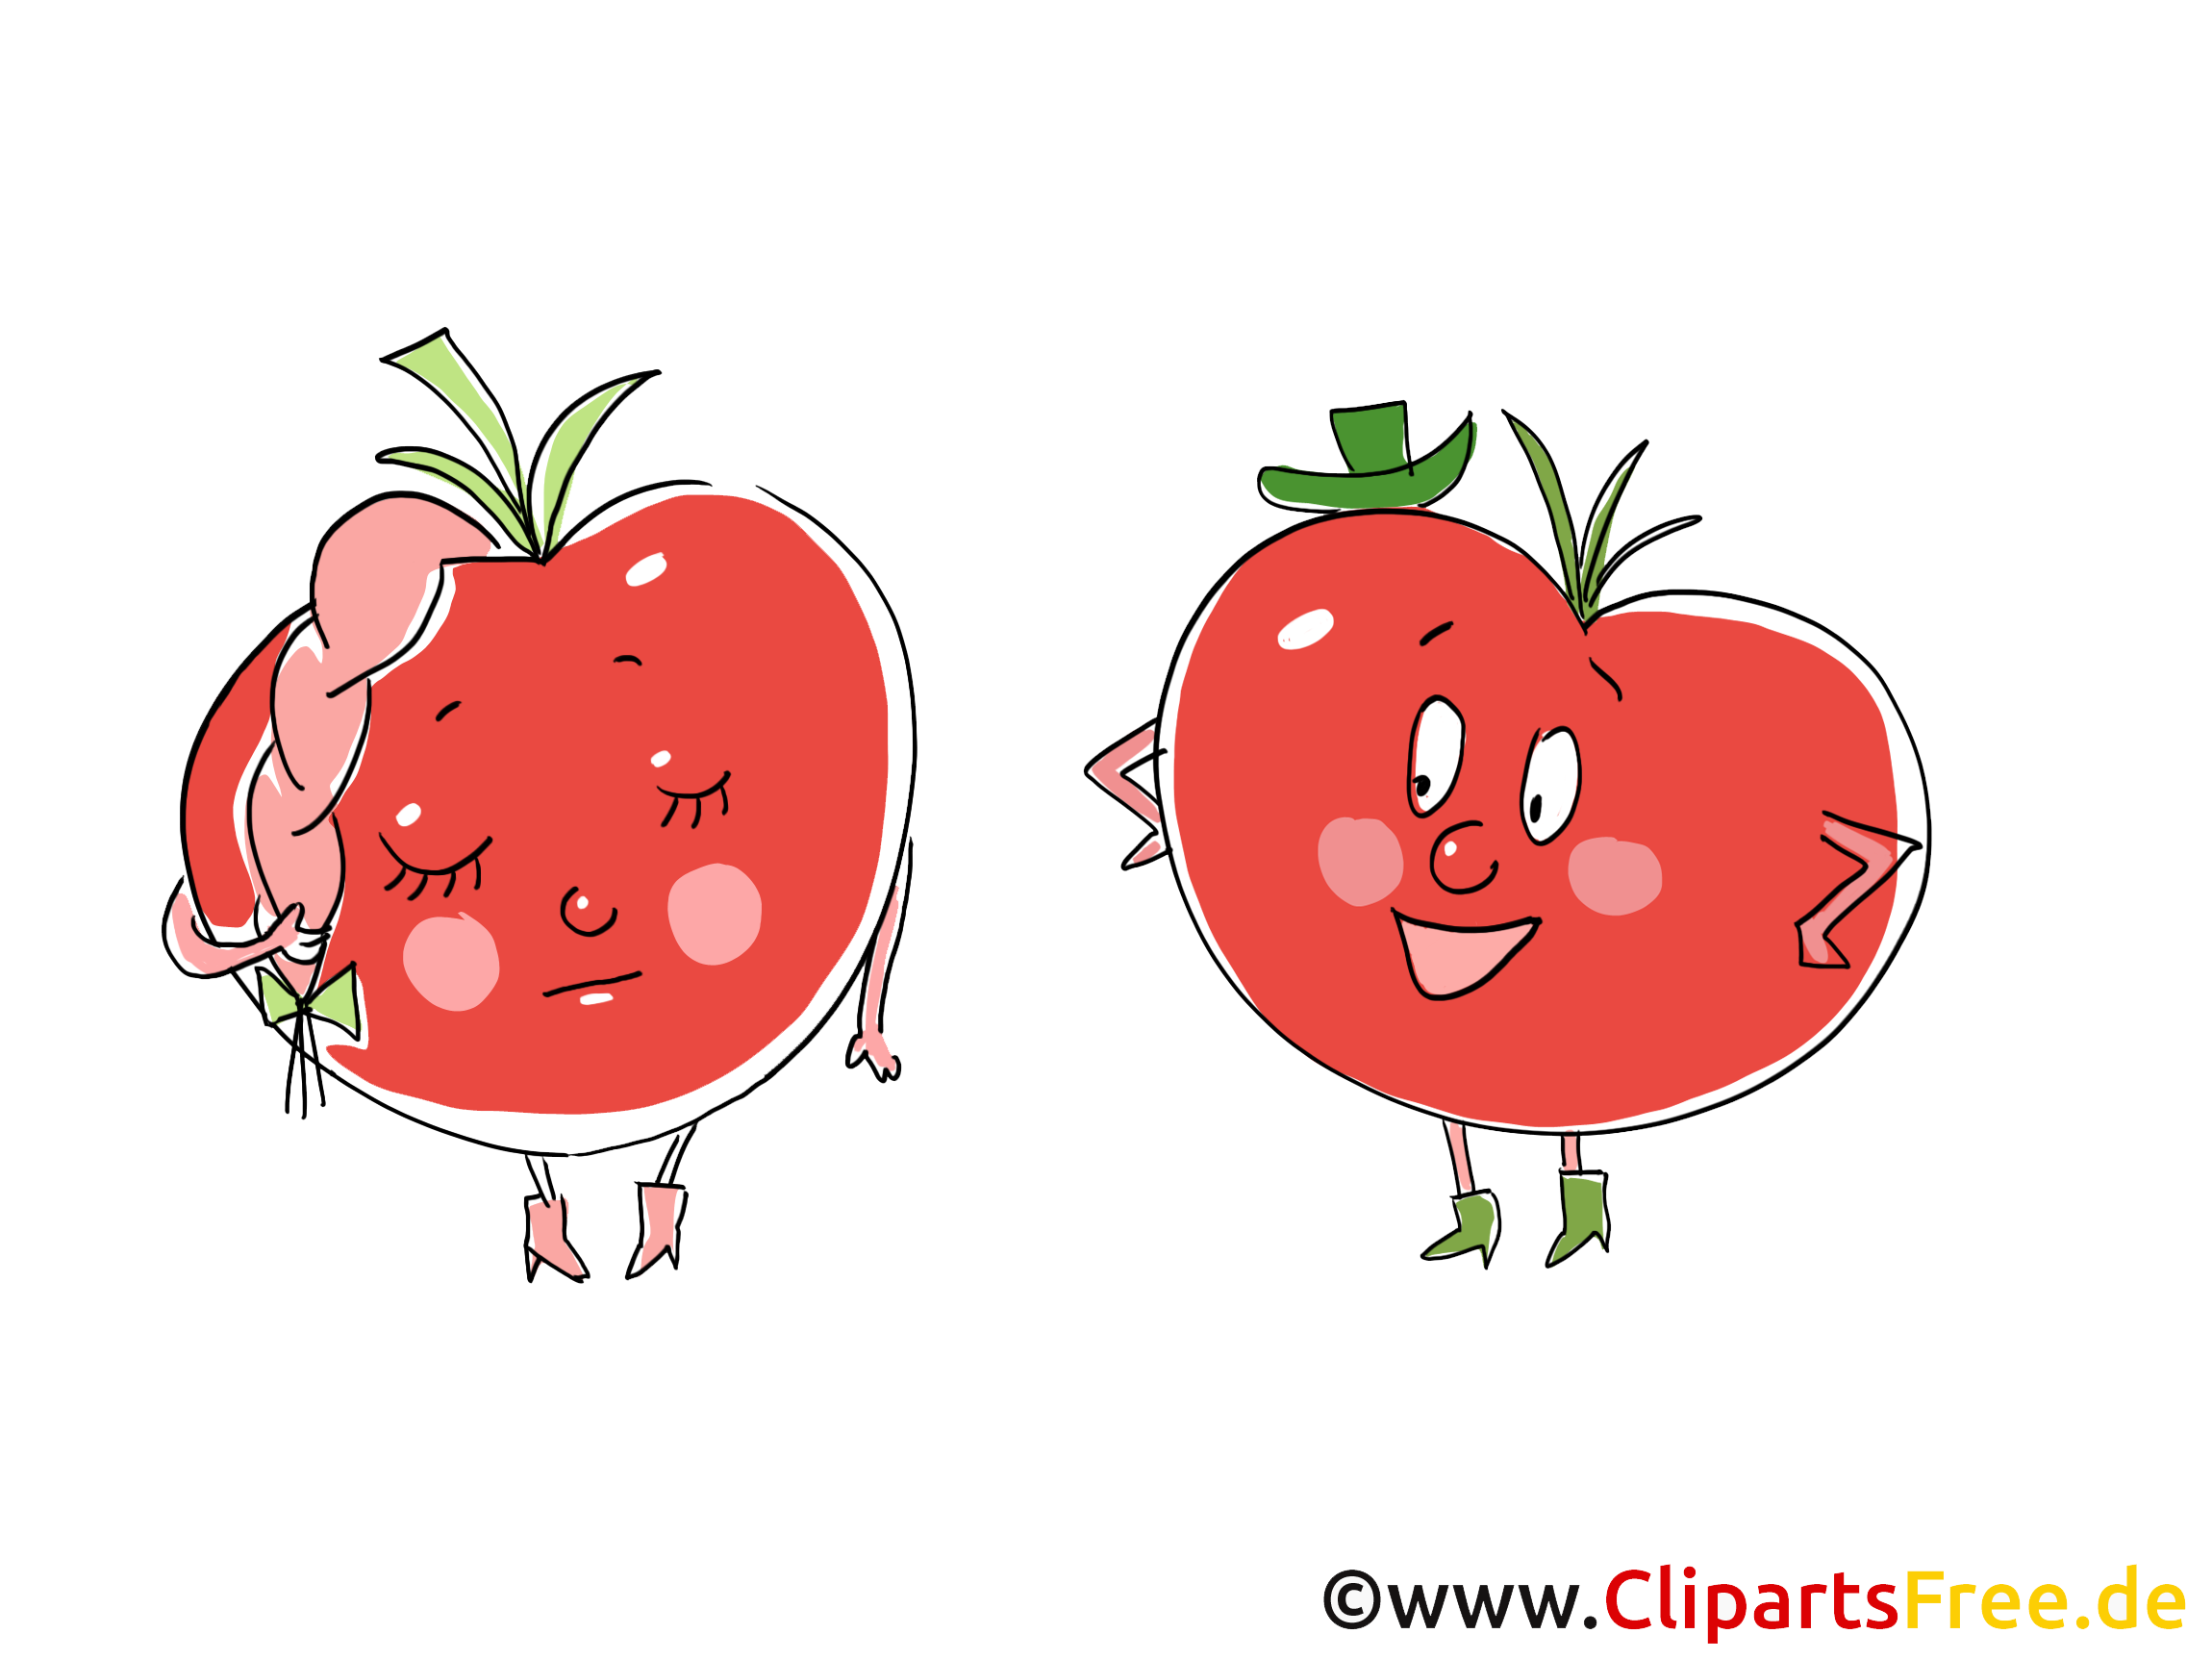 Tomates clipart gratuit - Légume images